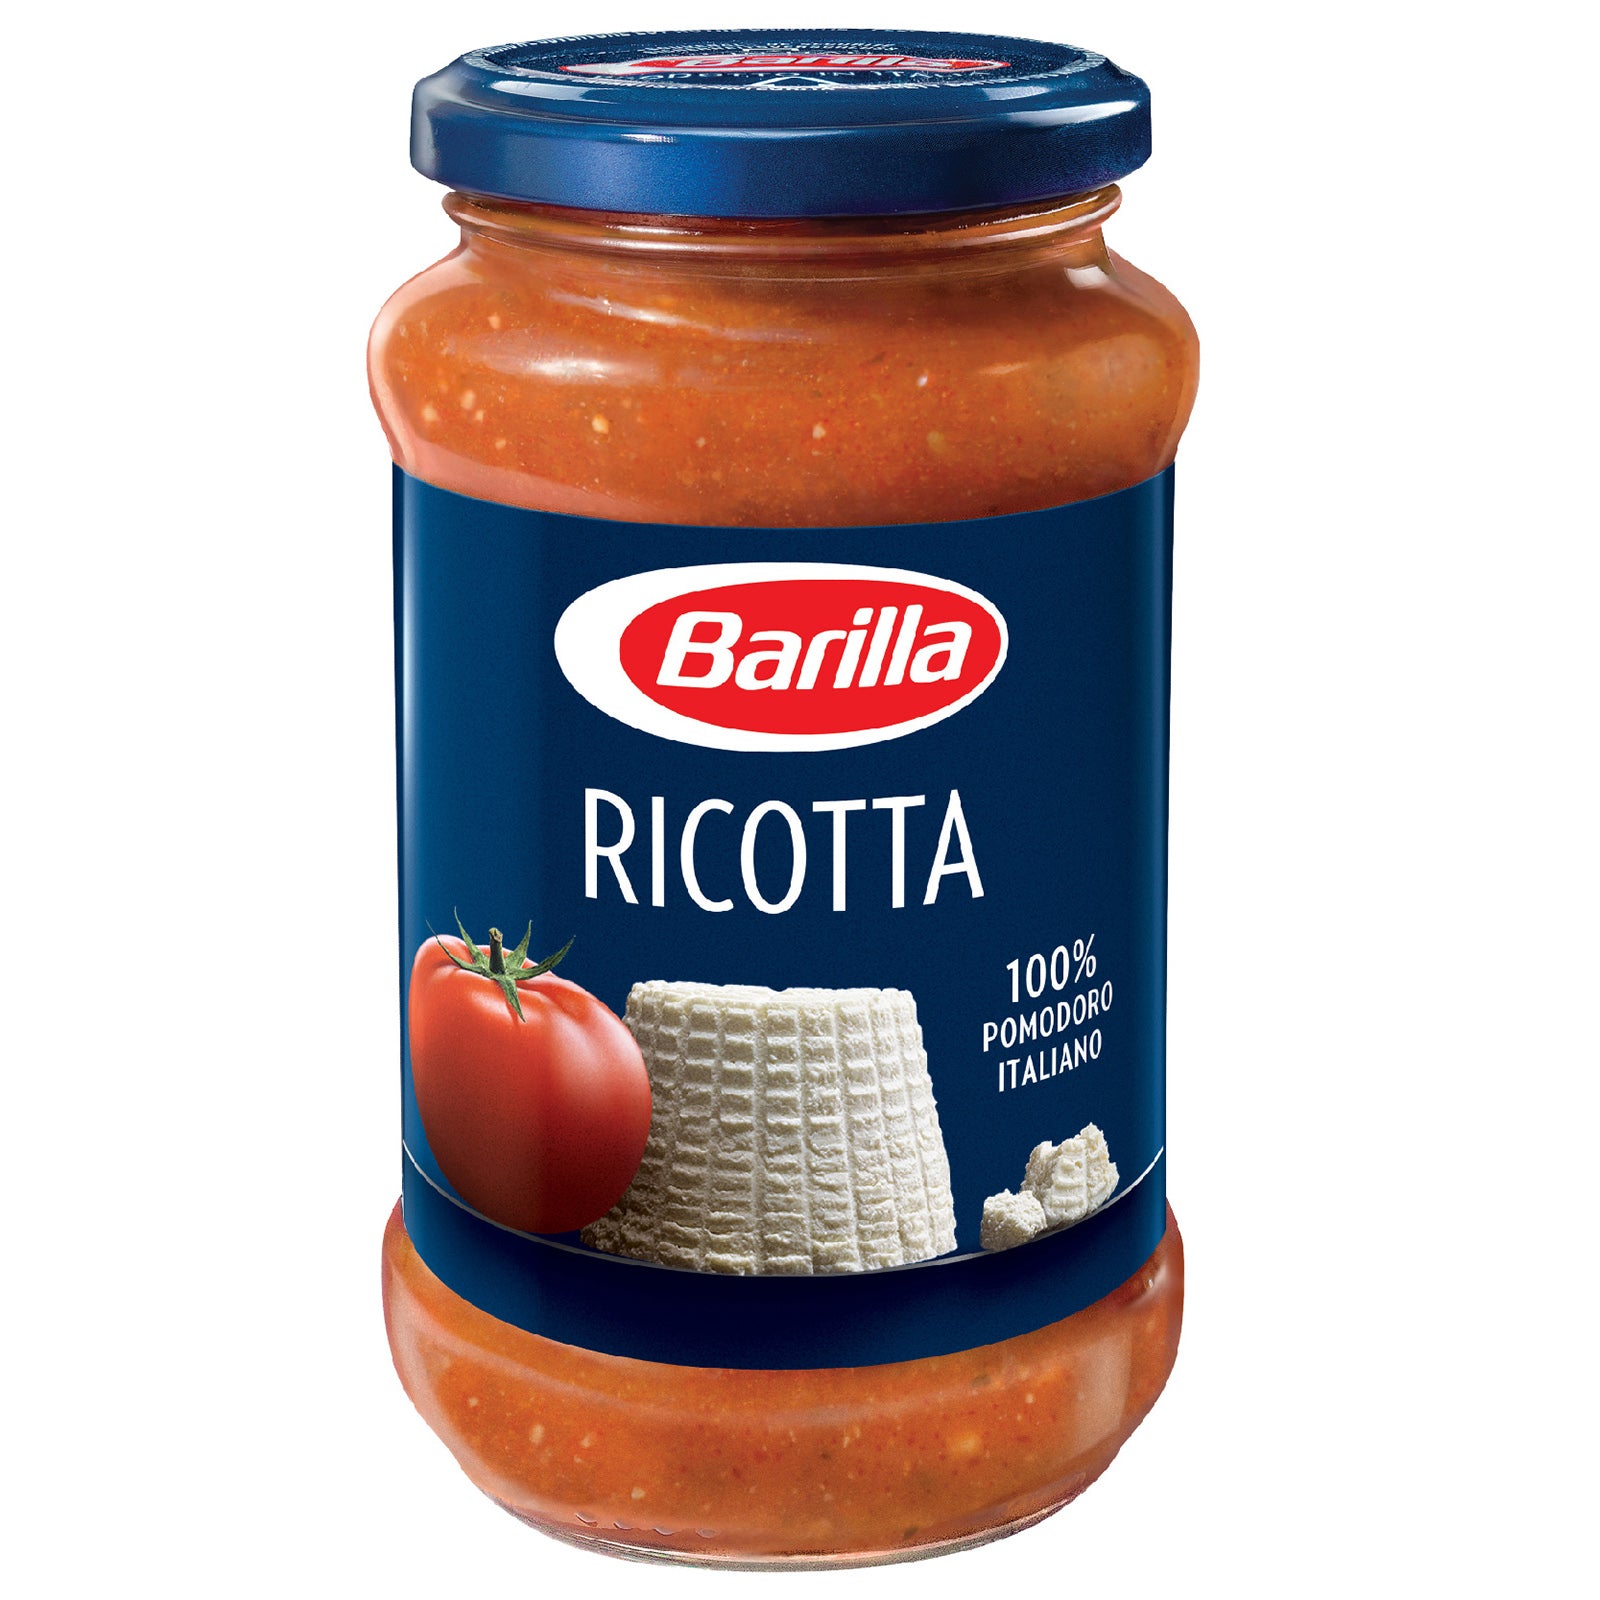 Barilla Ricotta Pasta - Sauce Tomato Italian Click Cuisine with 400g